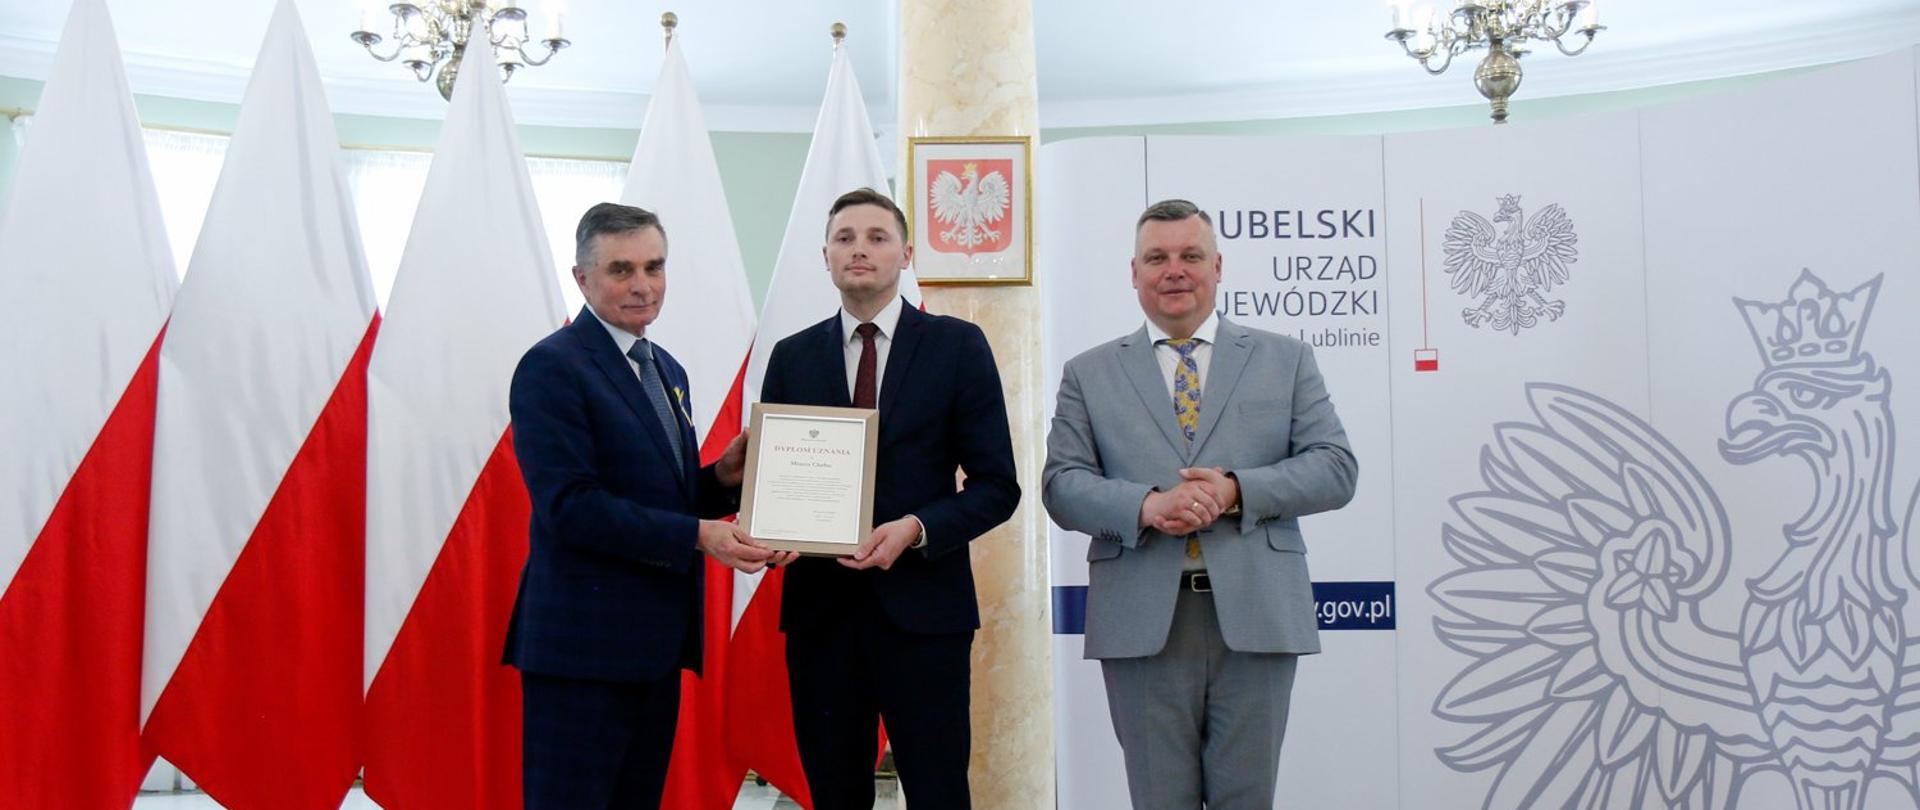 Zdjęcie przedstawia trzy osoby stojące wewnątrz budynku na tle flagi Polski. Jedna z nich trzyma w ręce oprawiony w ramkę dyplom.